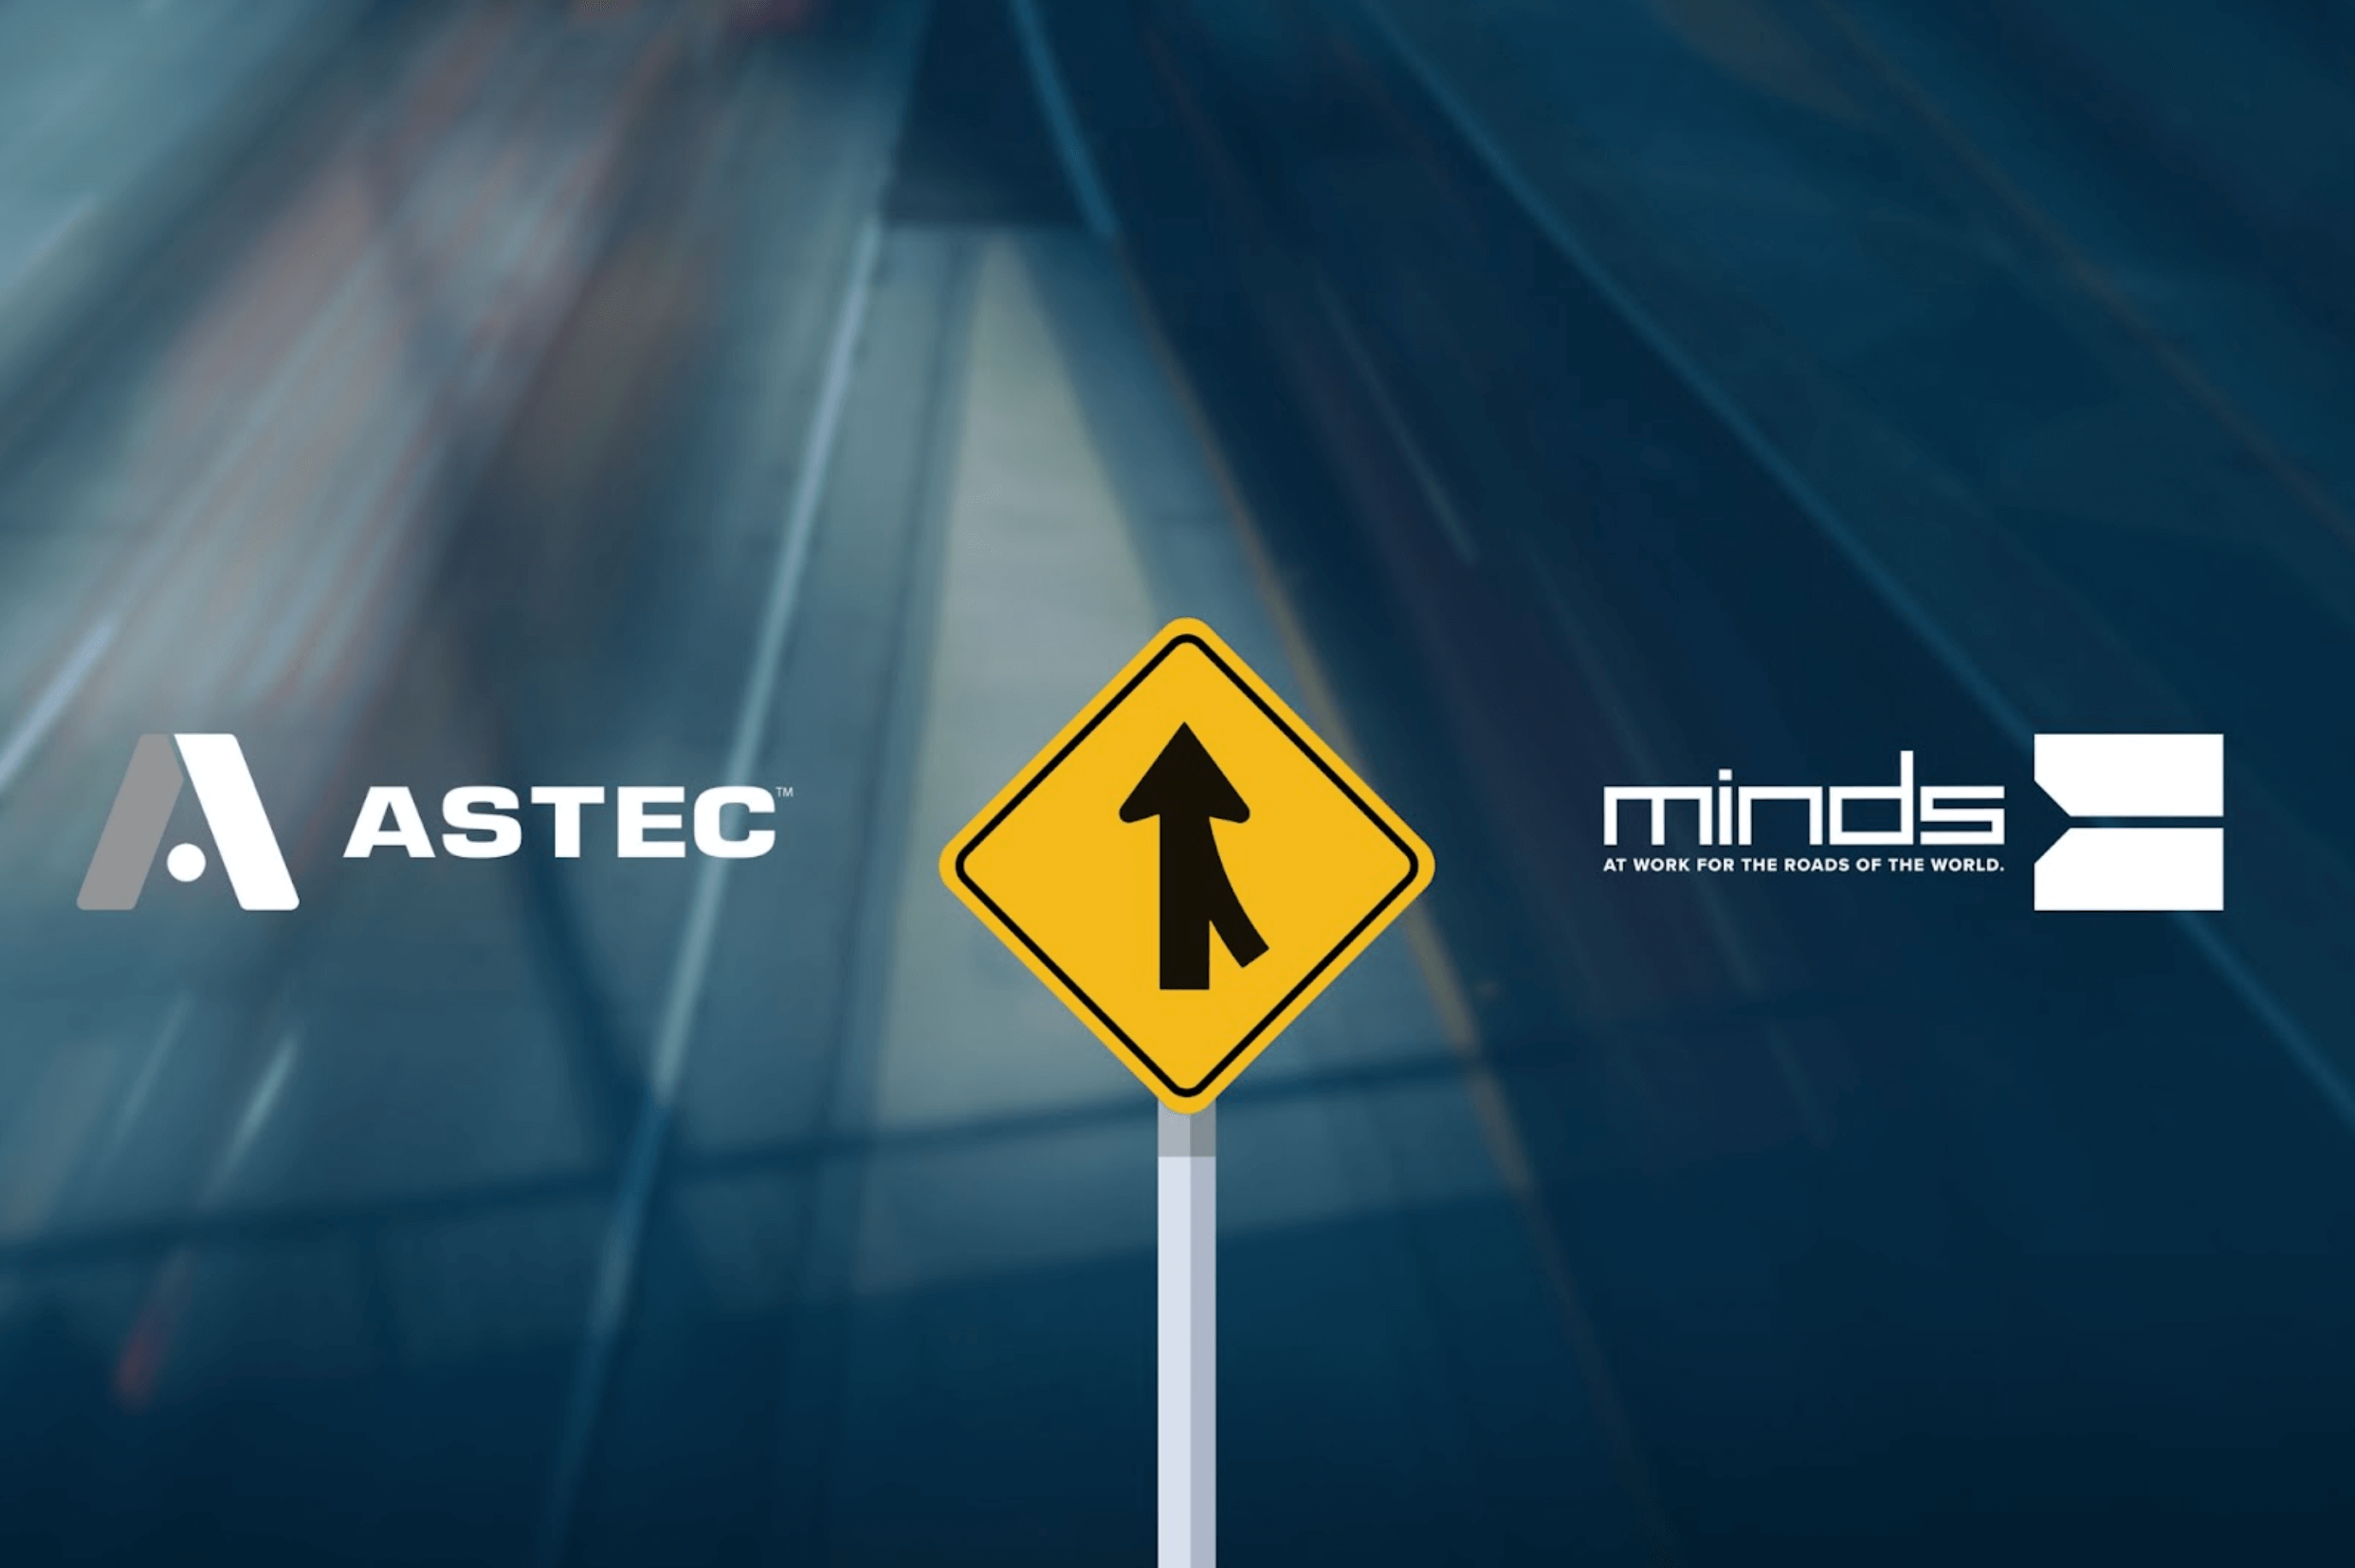 Astec logo and MINDS logo